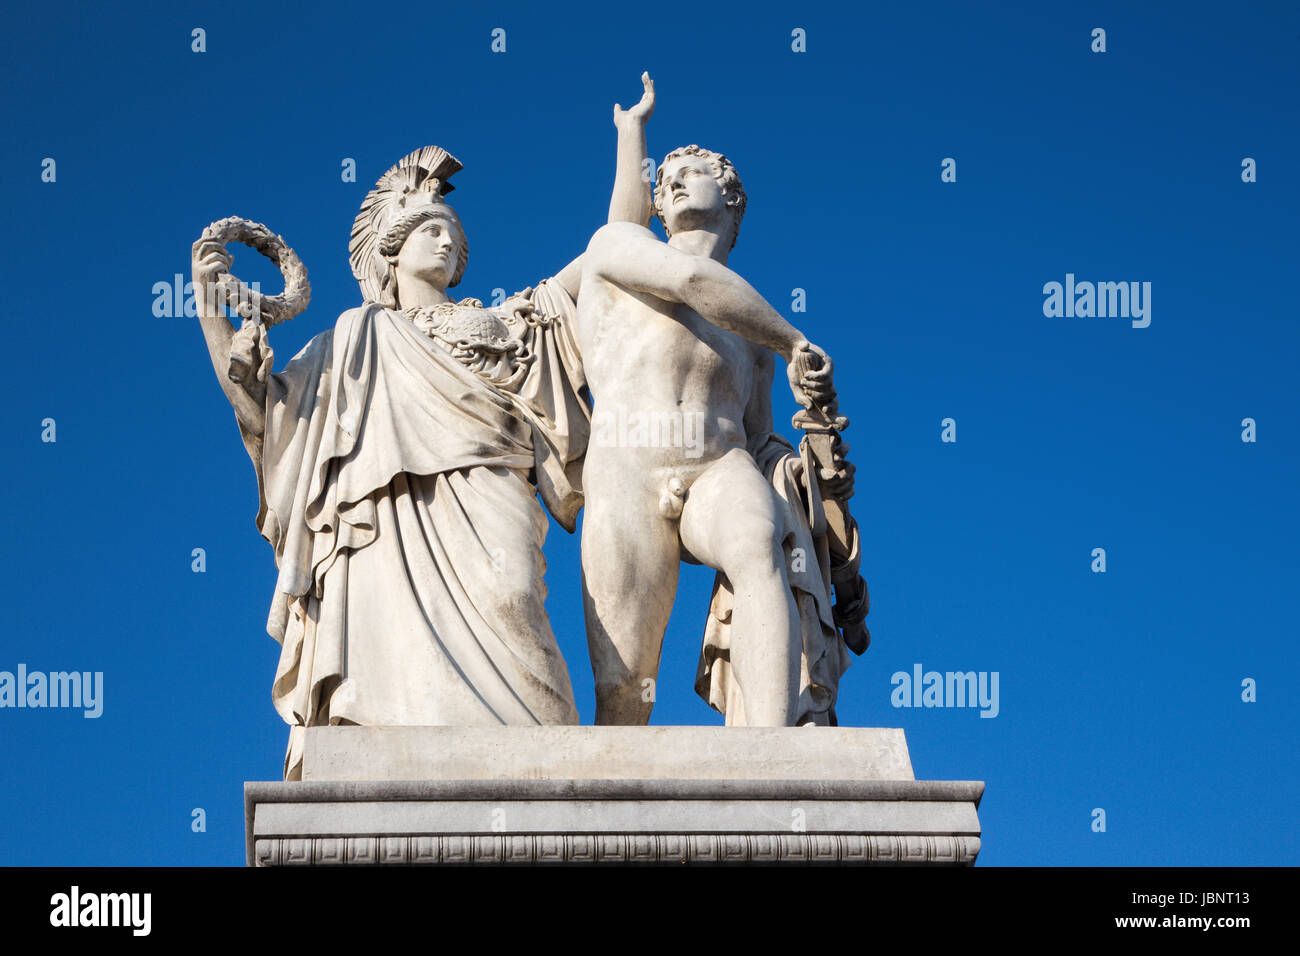 BERLIN, Deutschland, Februar - 13, 2017: Die Skulptur auf der Schlossbruecke - führt Athena den jungen Krieger in den Kampf (Pallas Athene Führt Den jun Stockfoto